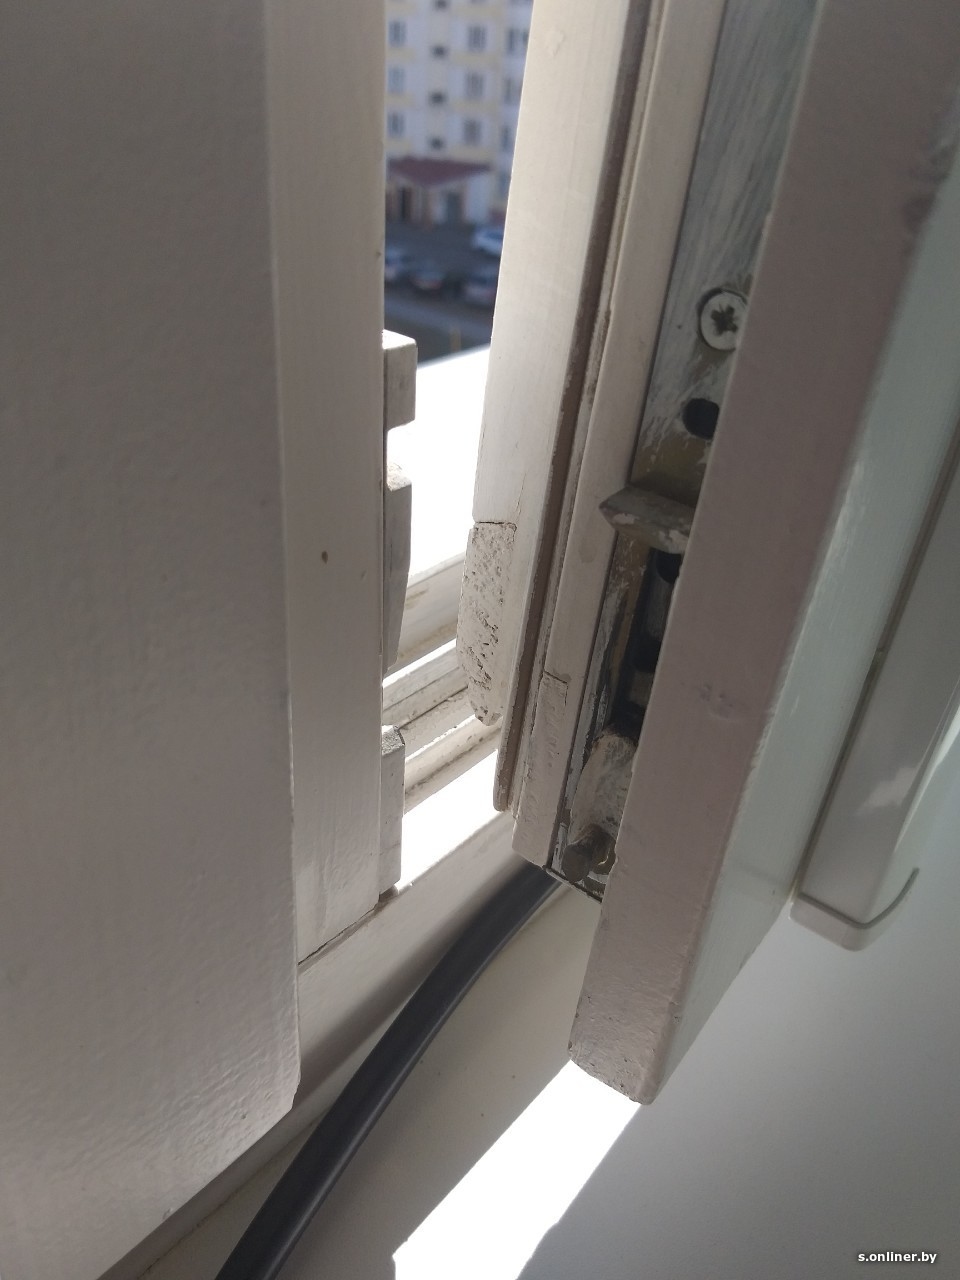 Монтаж магнитной защелки на балконную дверь